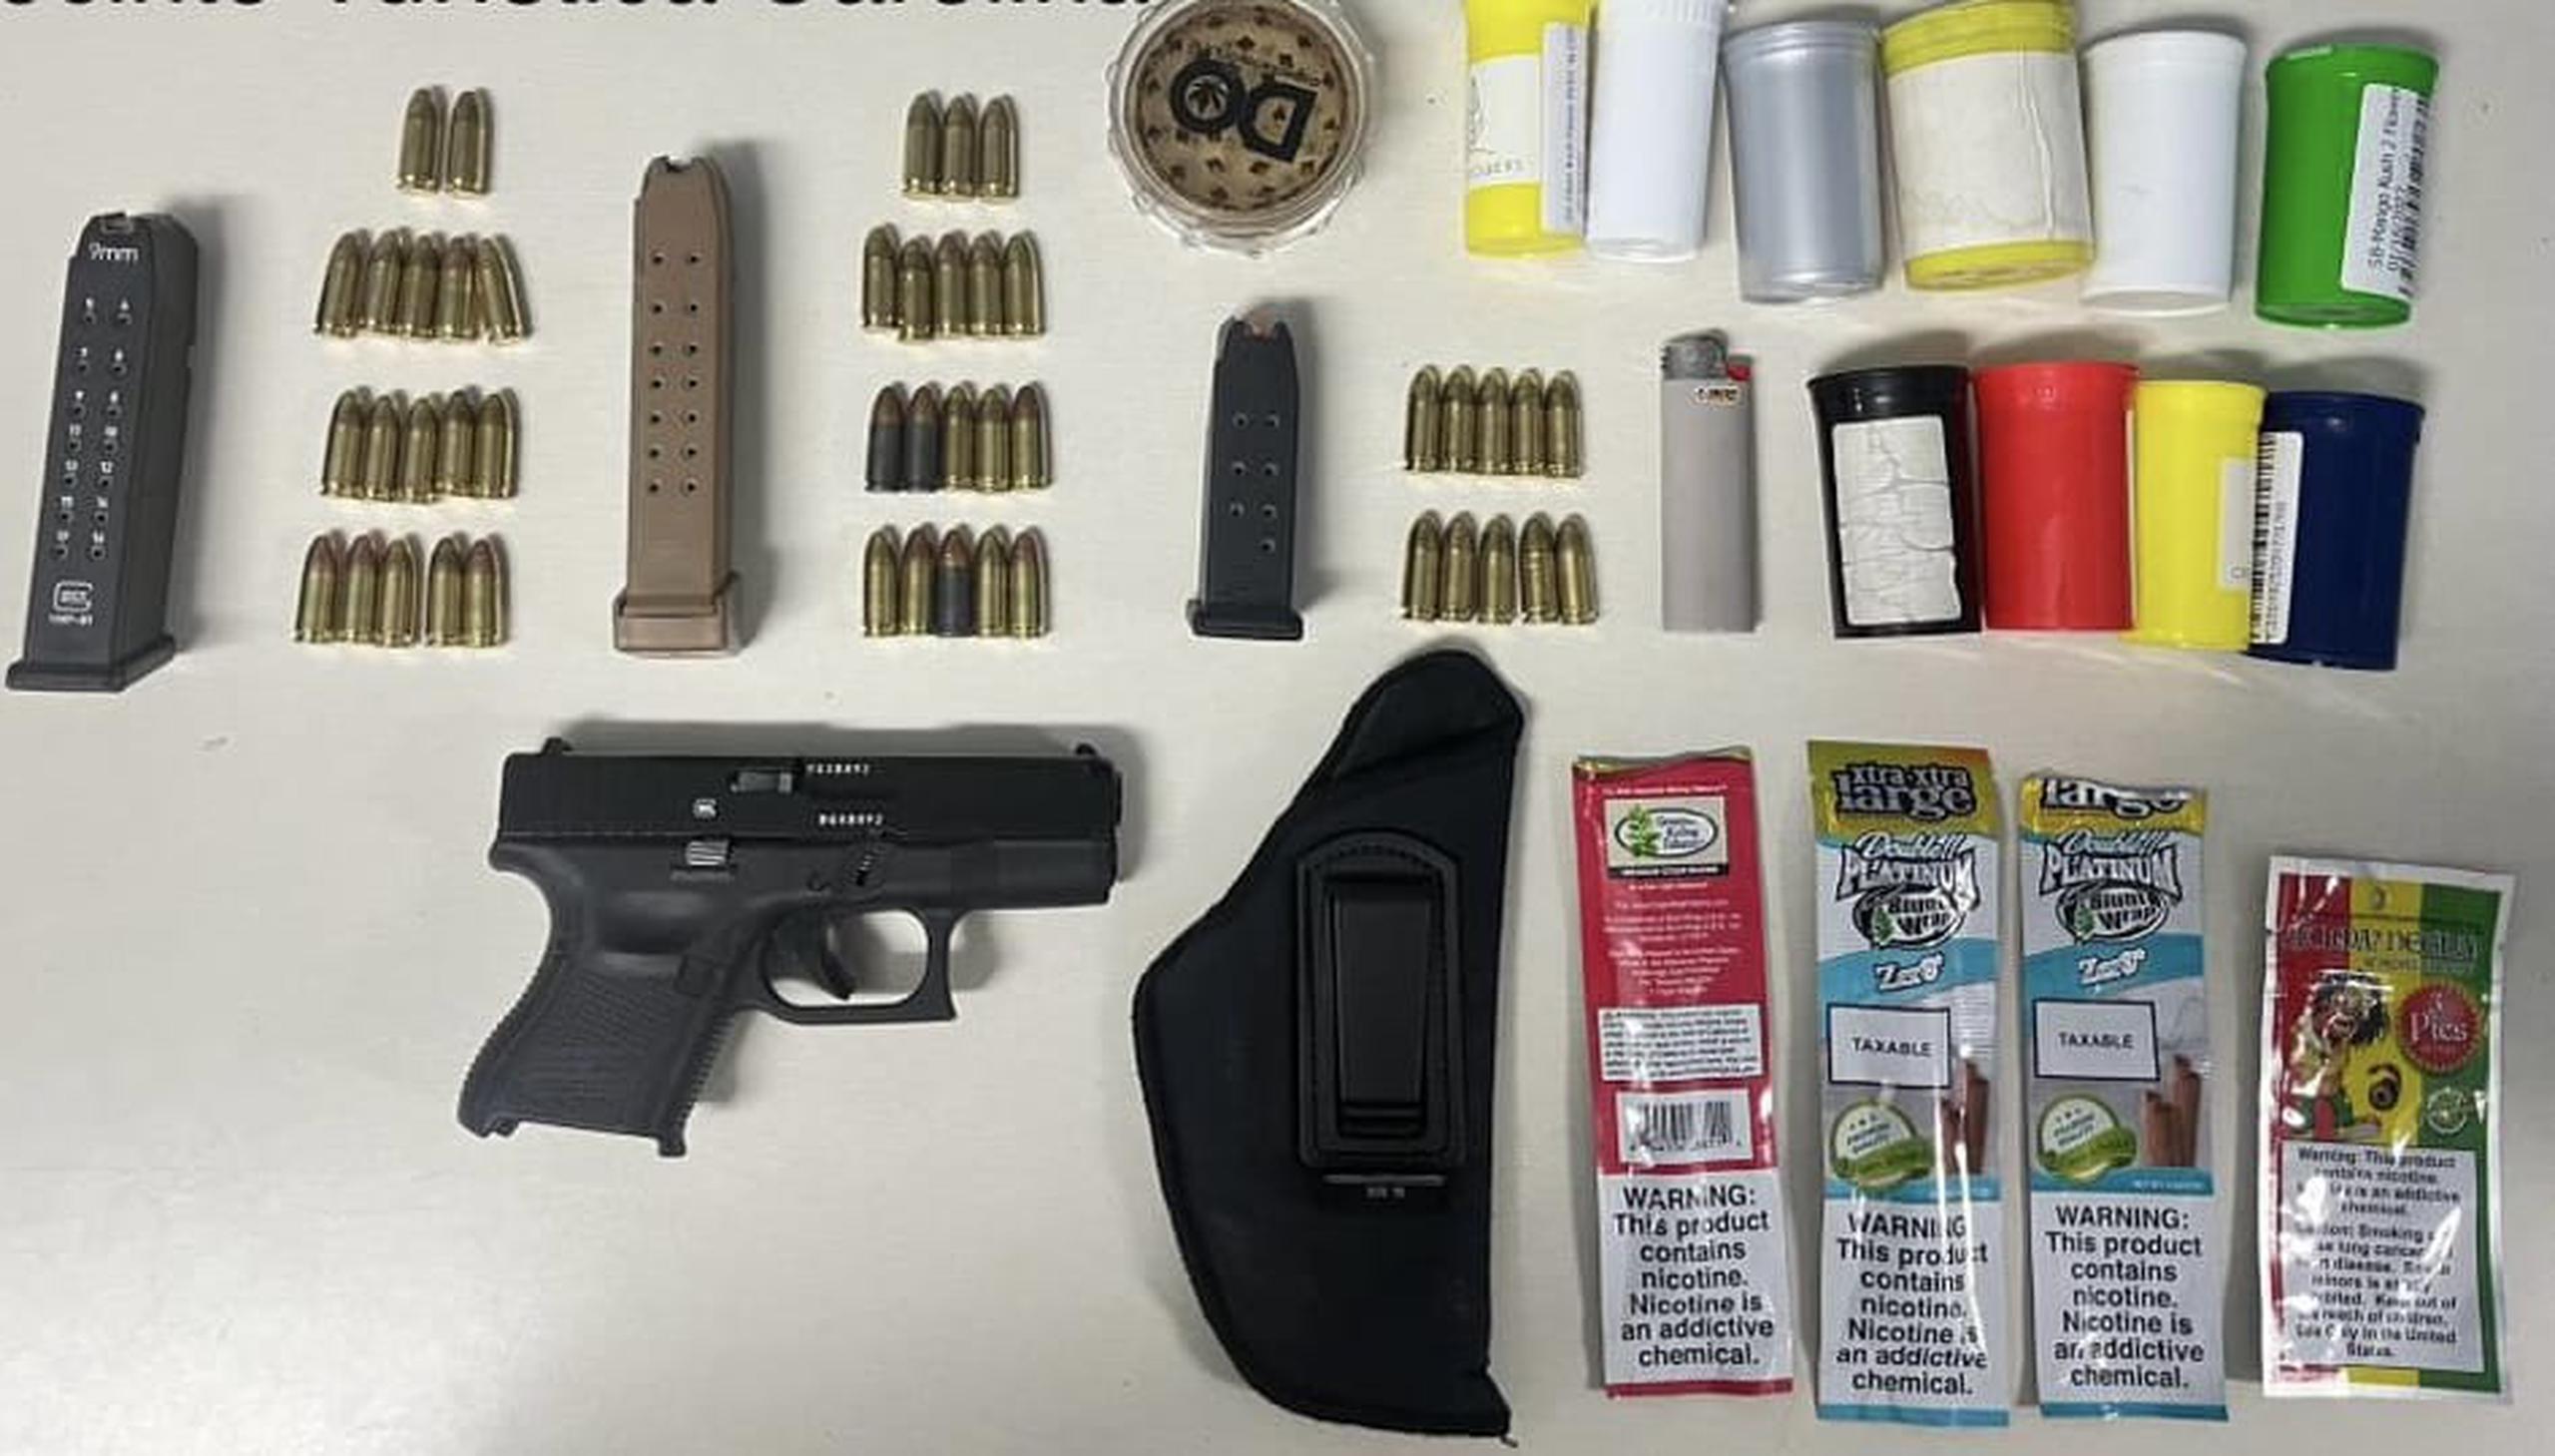 Un arma ilegal, cargadores, balas y sustancias controladas ocupadas durante una intervención de tránsito en Isla Verde.